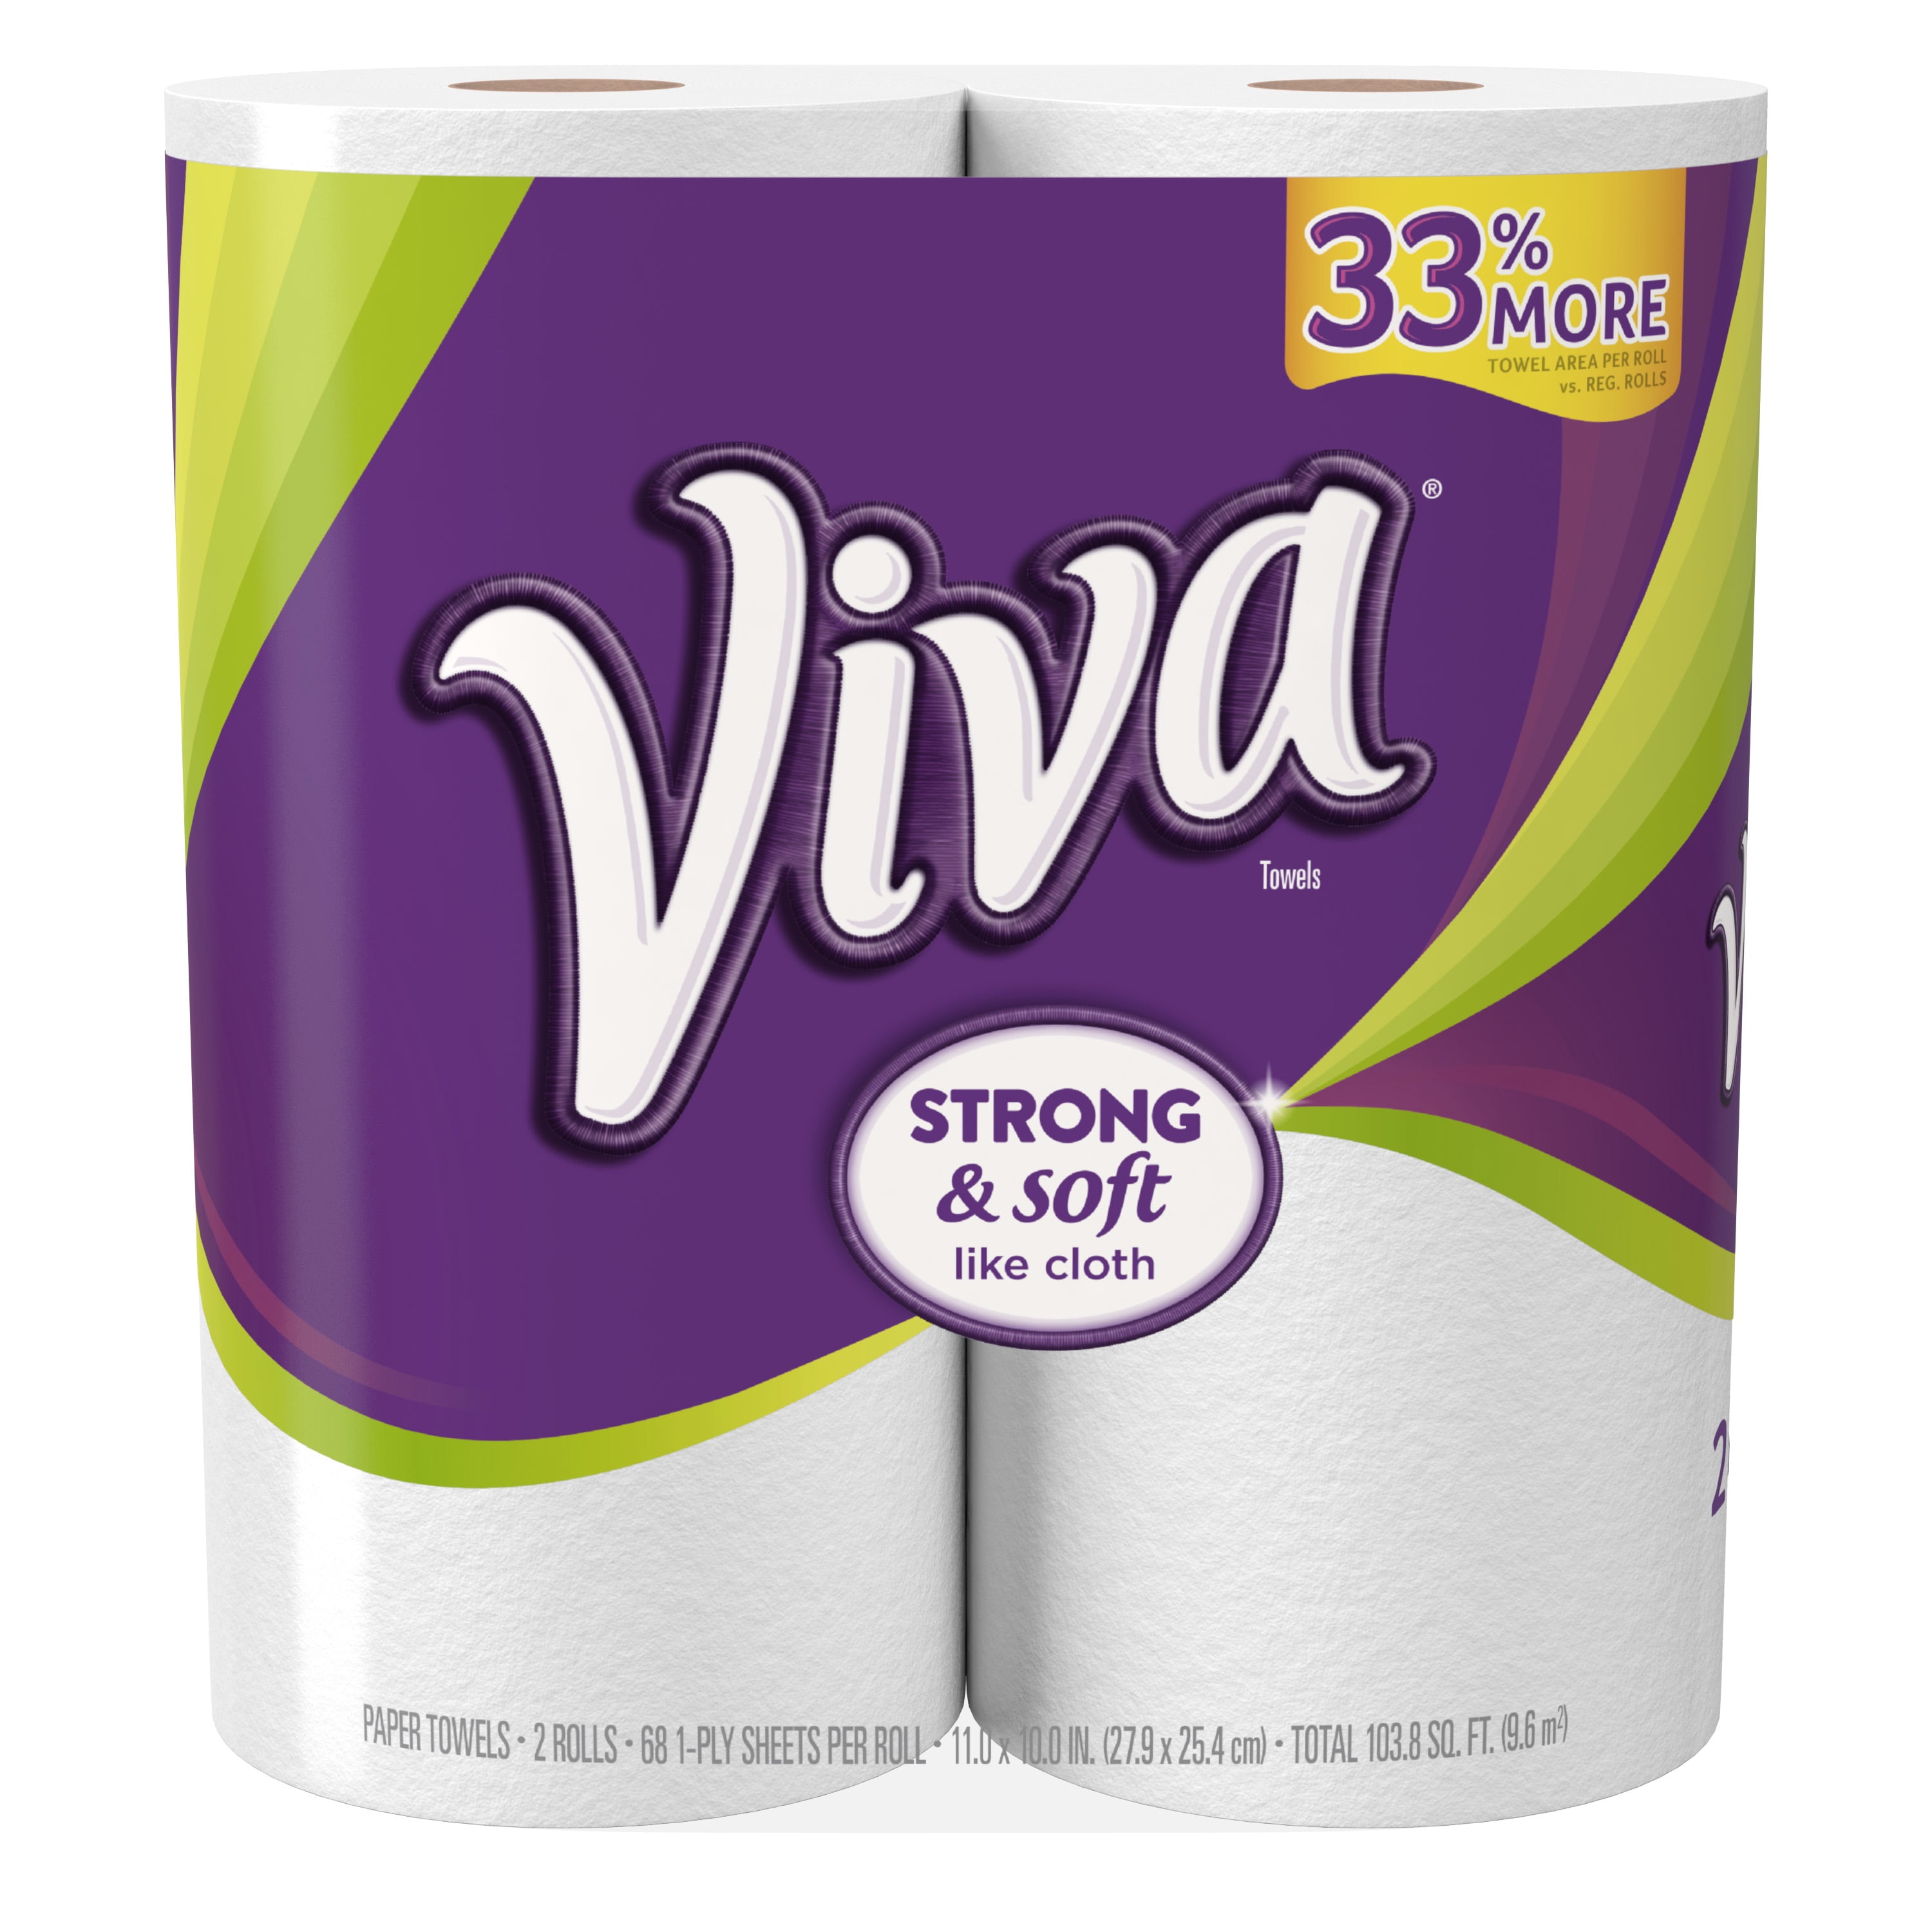 a viva paper towel